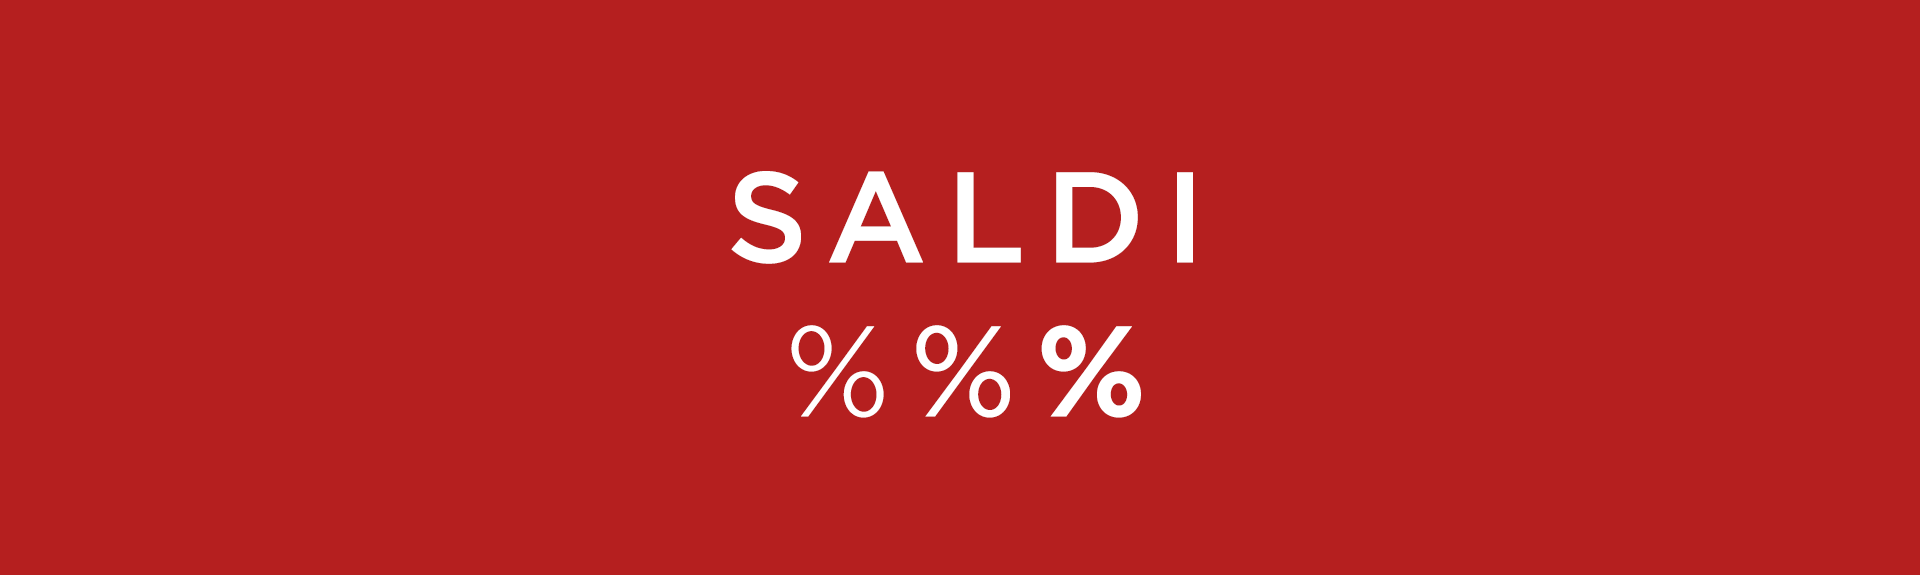 Saldi - wyprzedaż %%%